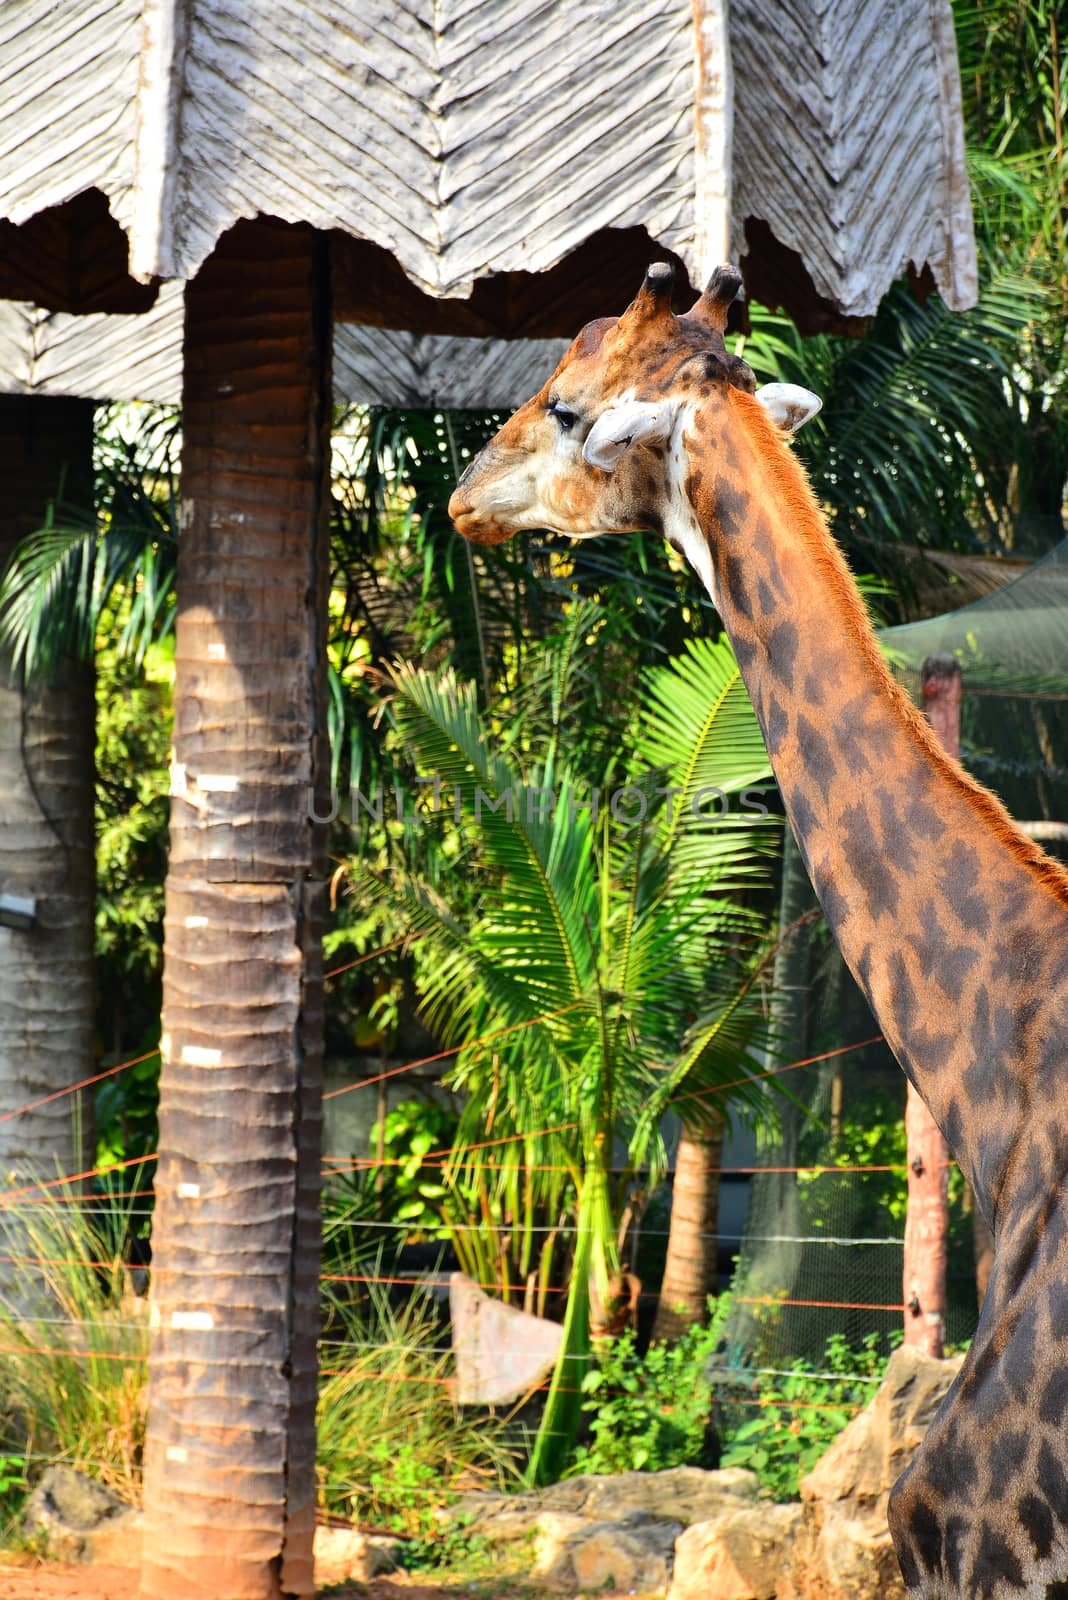 Giraffe at Dusit Zoo in Khao Din Park, Bangkok, Thailand by imwaltersy